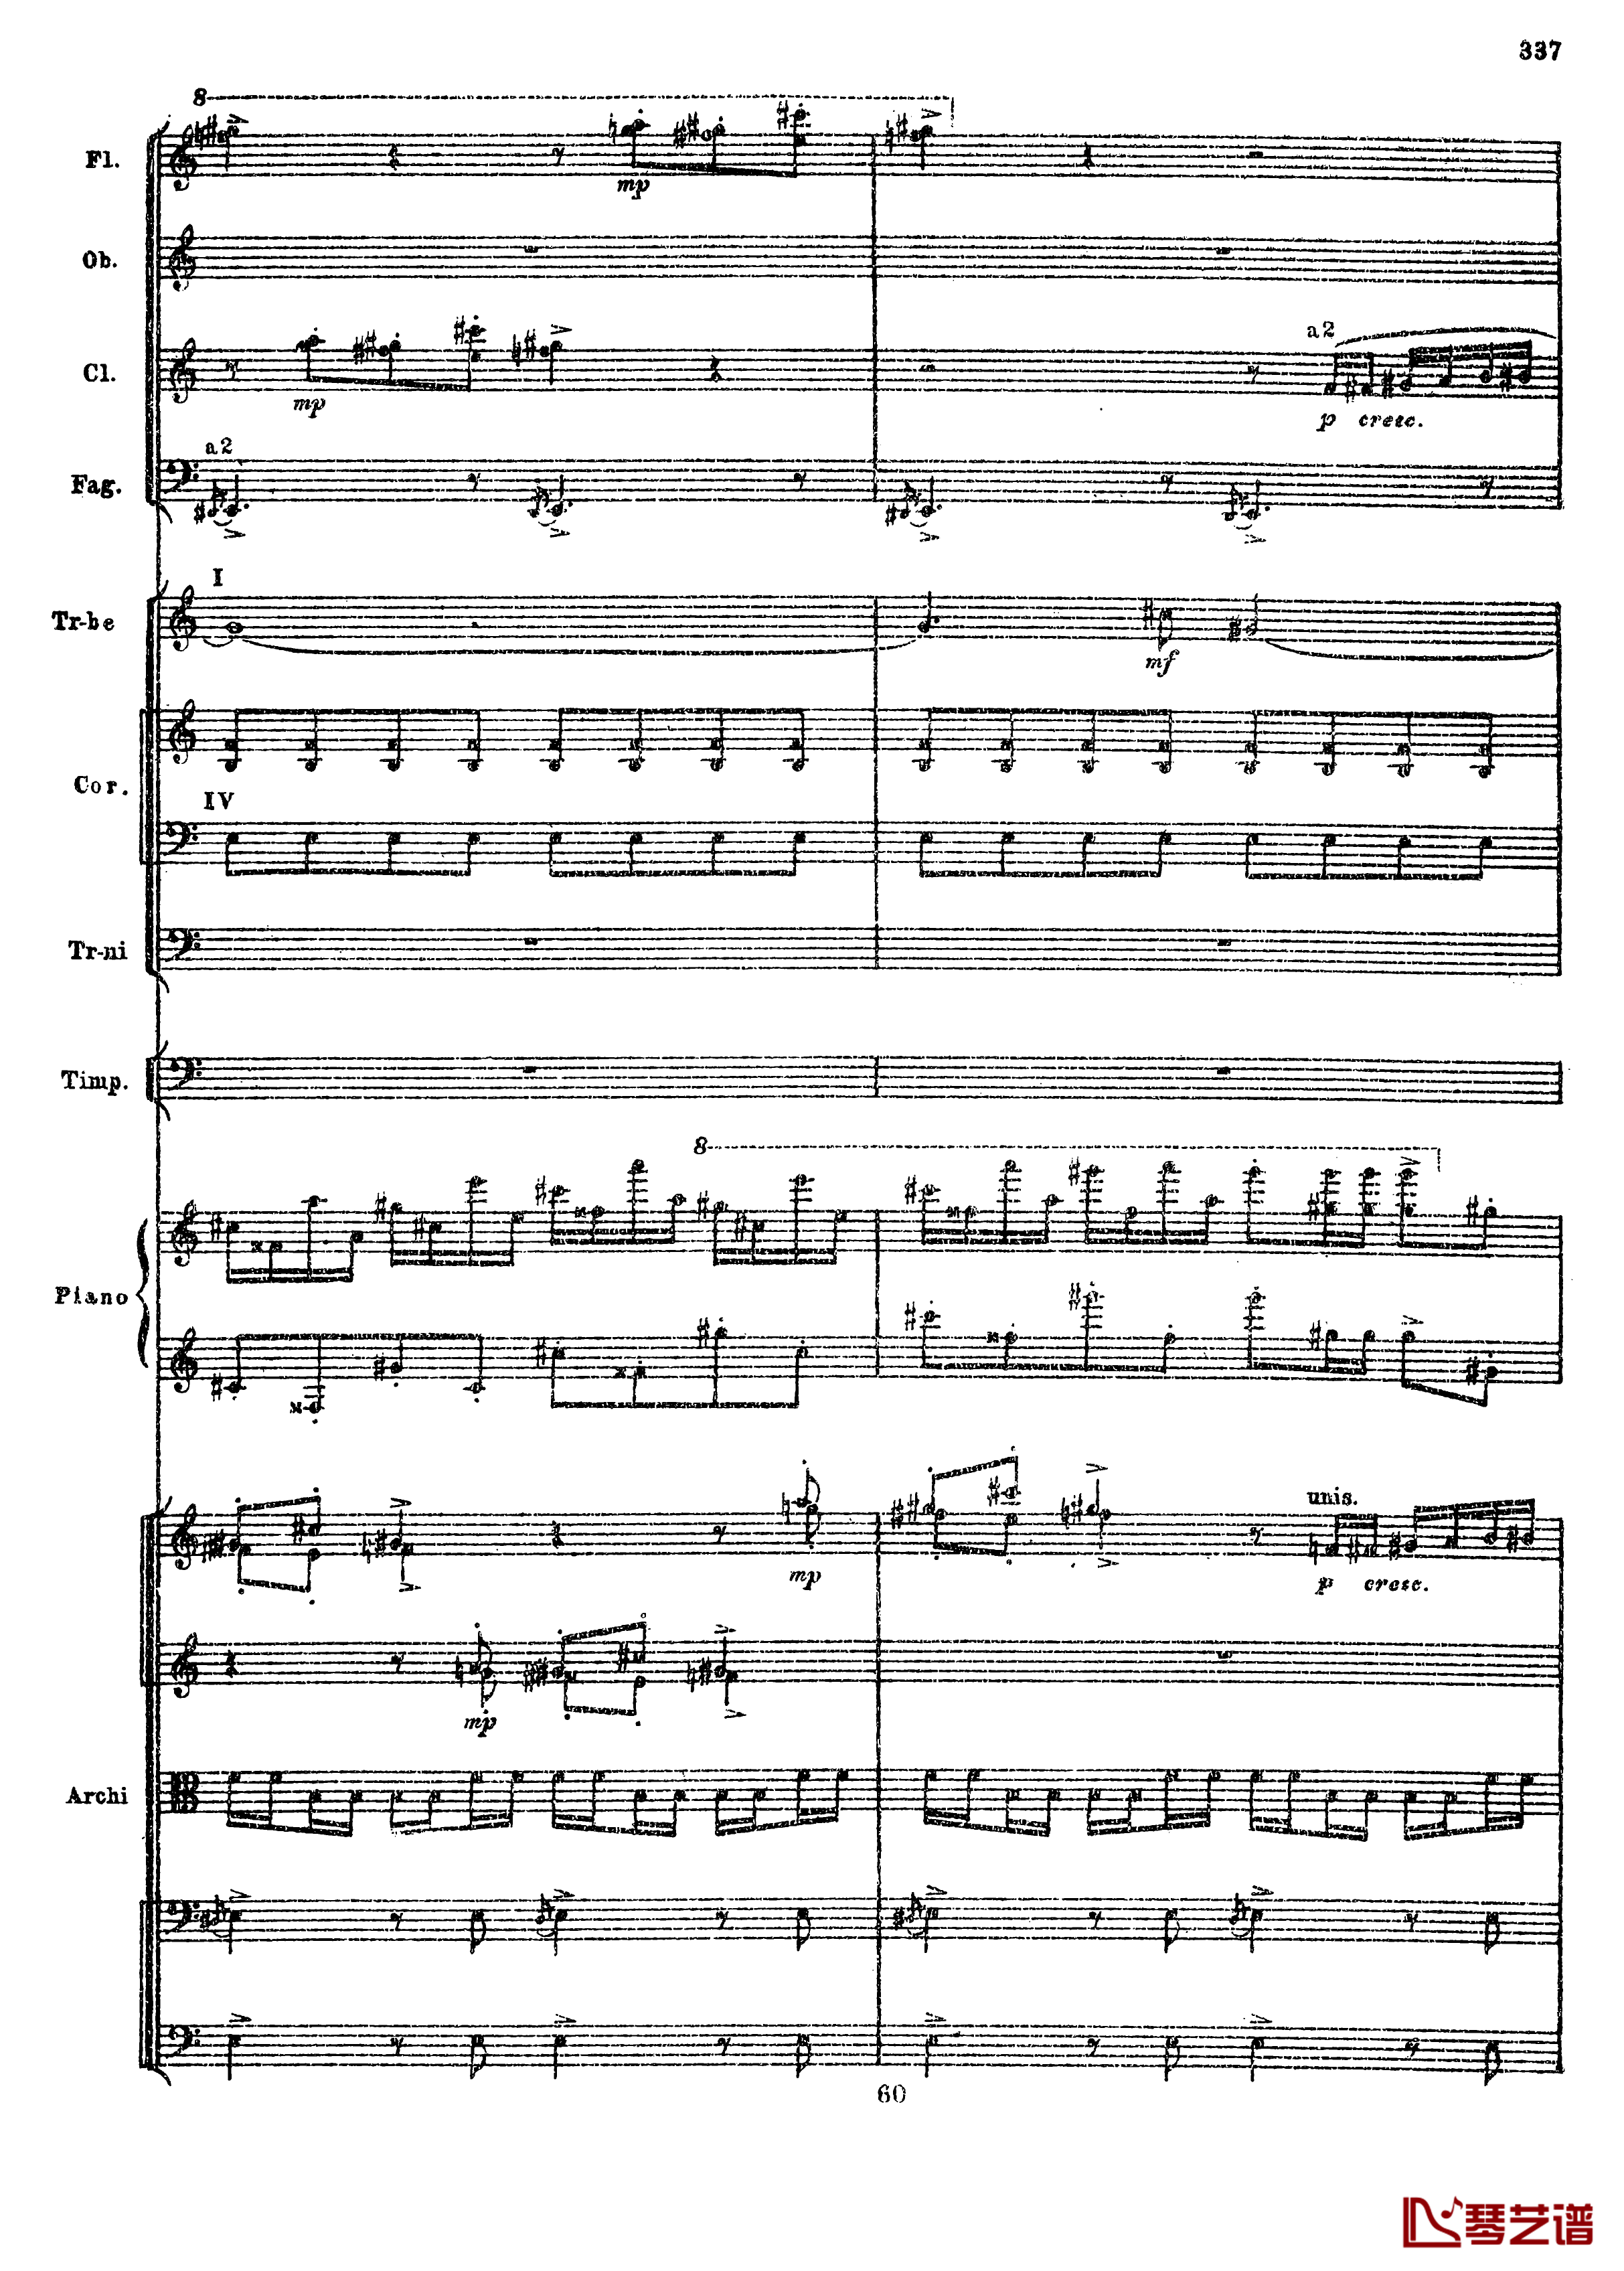 普罗科菲耶夫第三钢琴协奏曲钢琴谱-总谱-普罗科非耶夫69